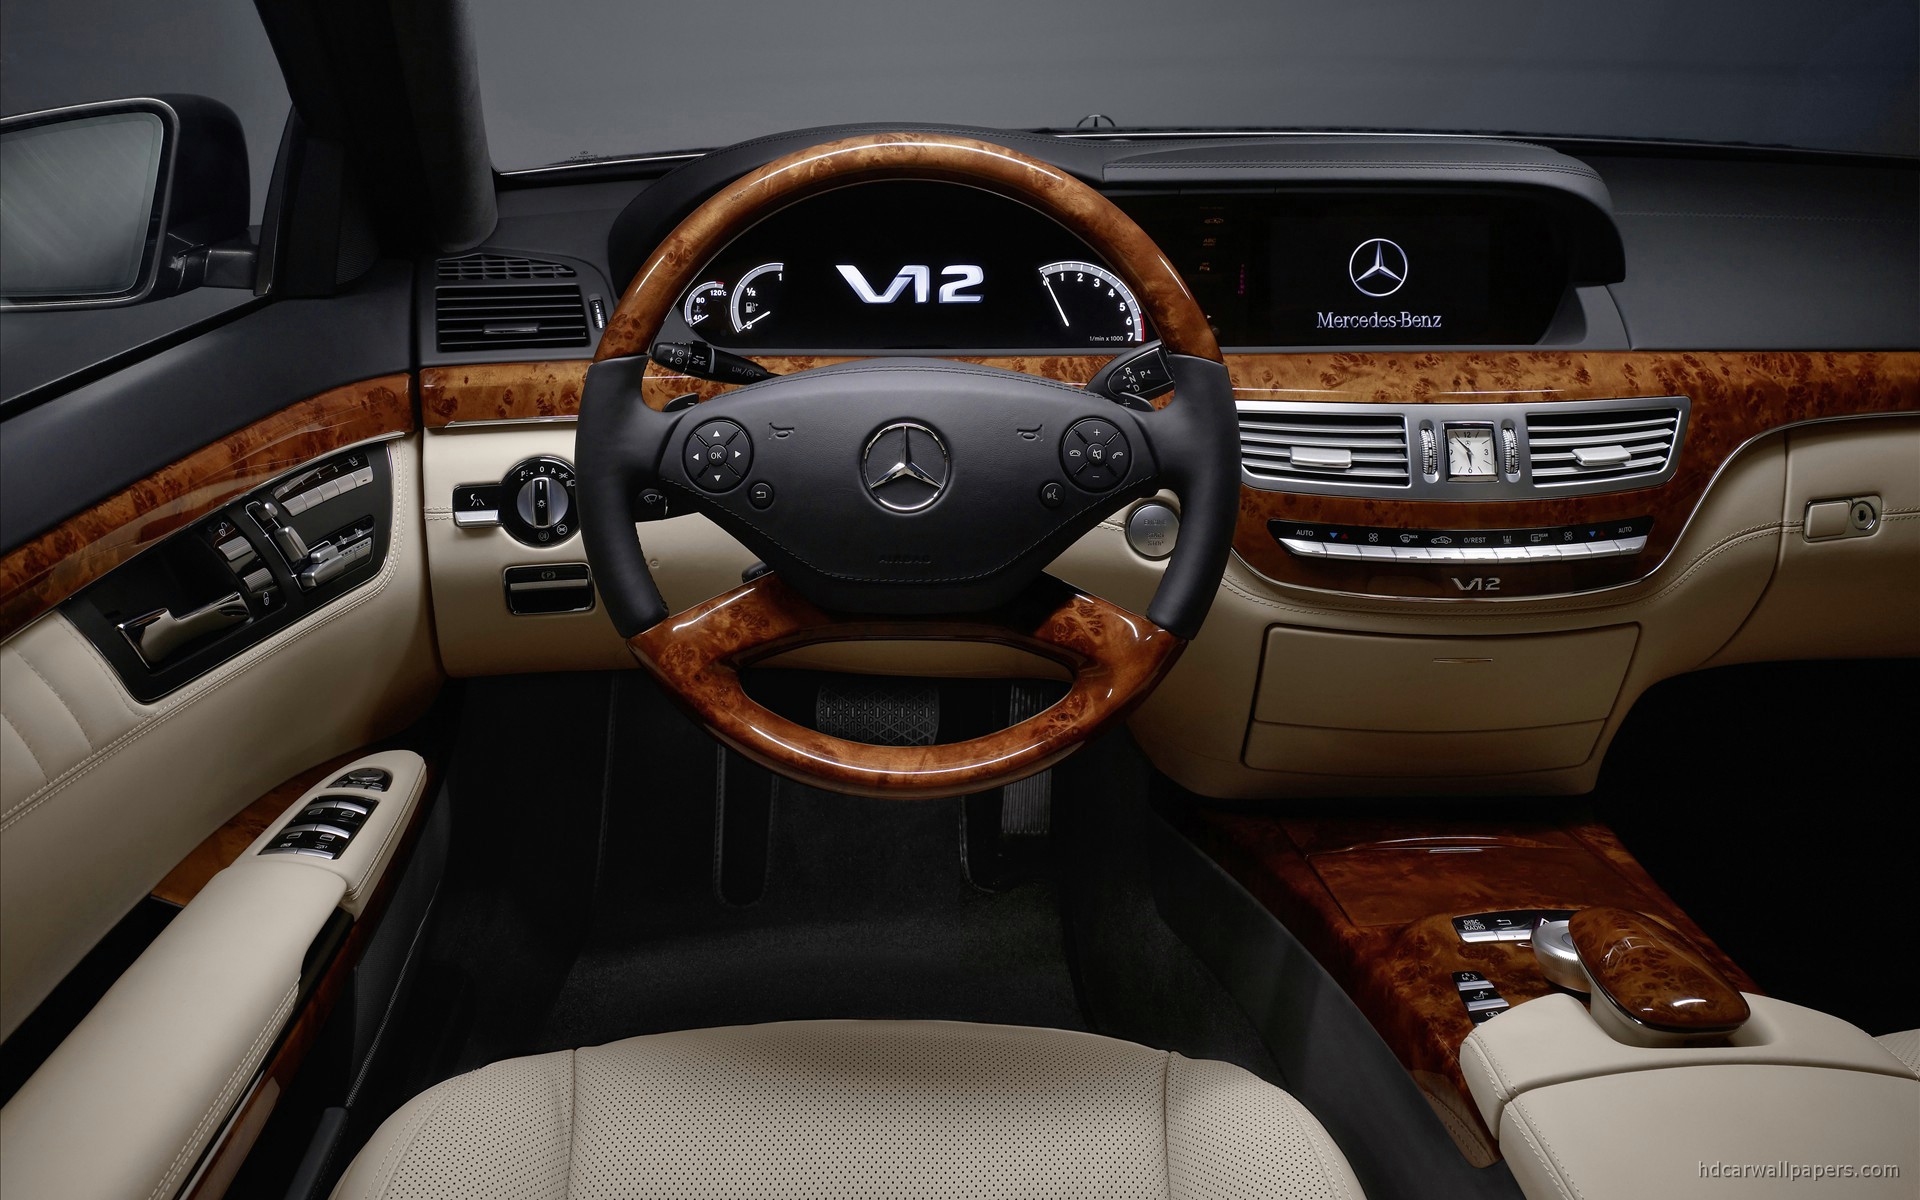 2010 Mercedes Benz S Class Interior Wallpaper Hd Car